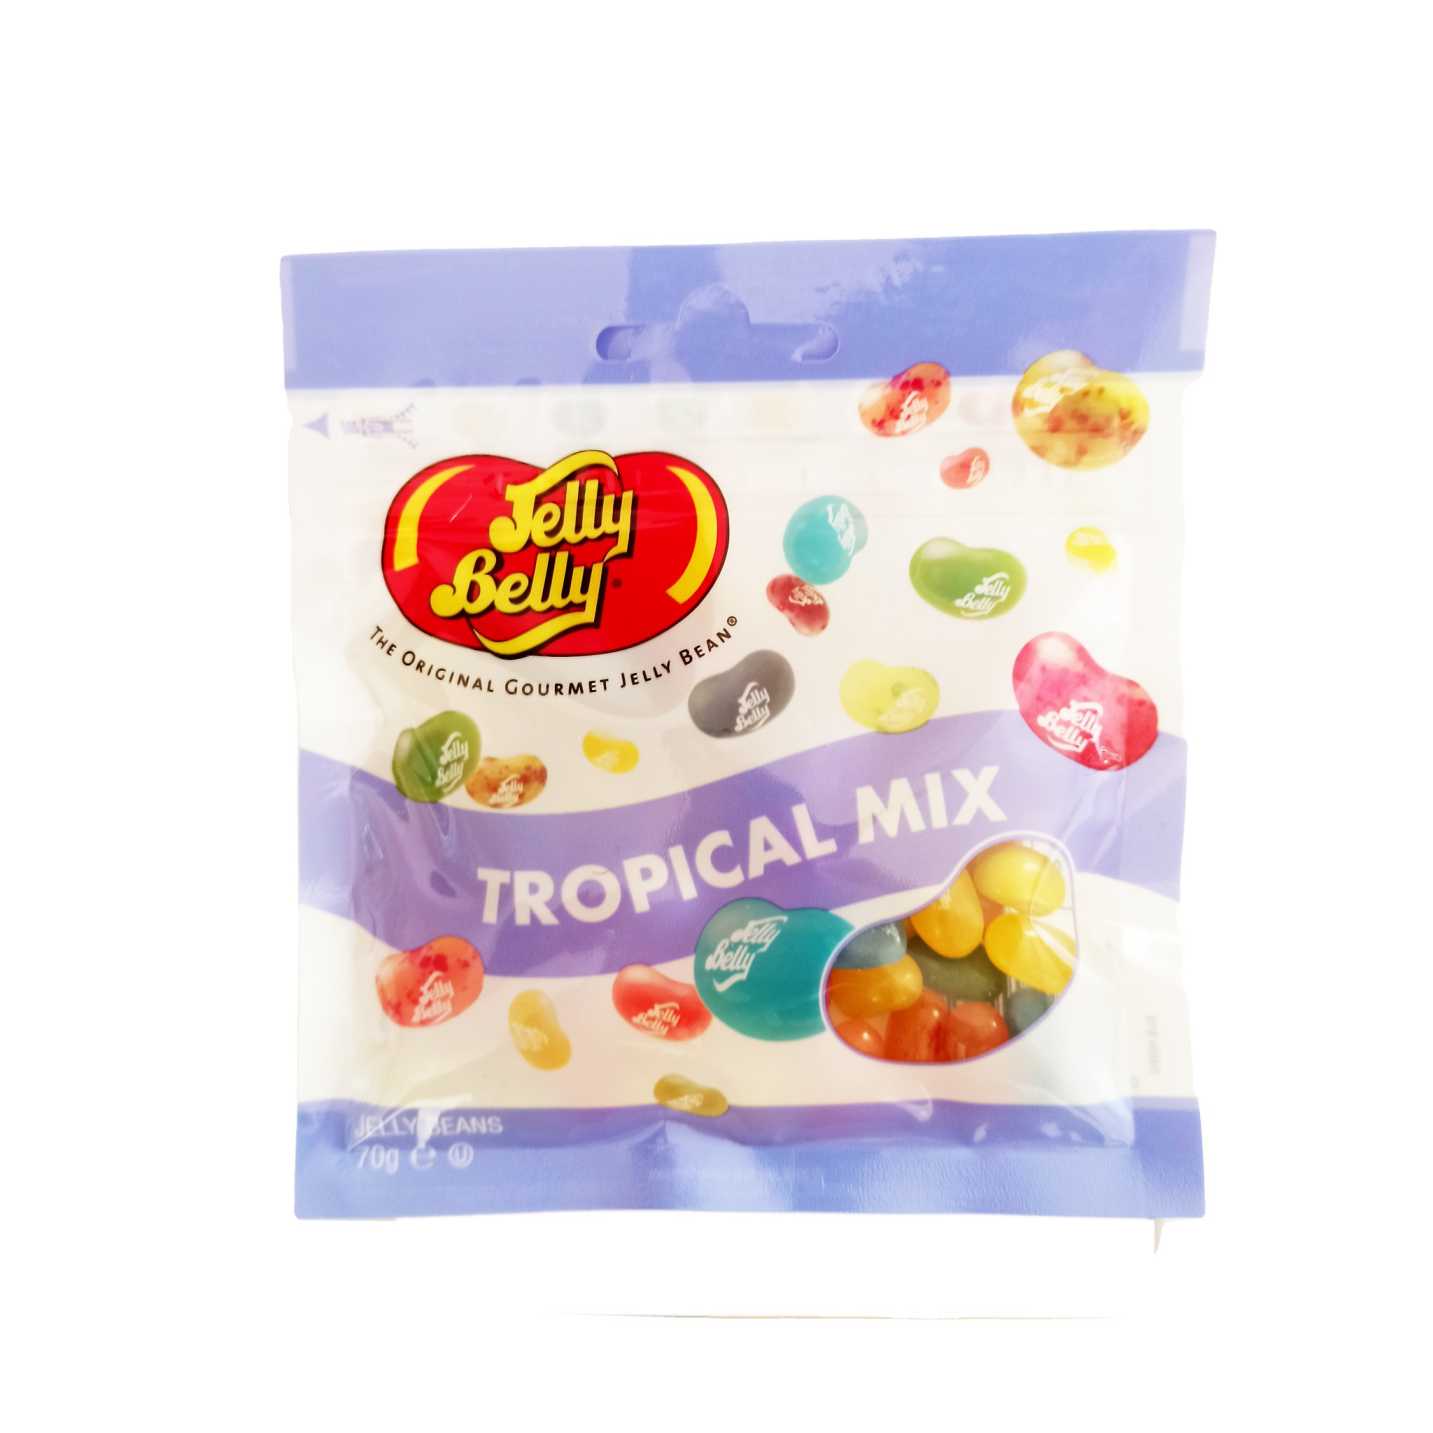 Jelly Belly Tropical Mix - ג'לי בלי מיקס טרופי - טעימים